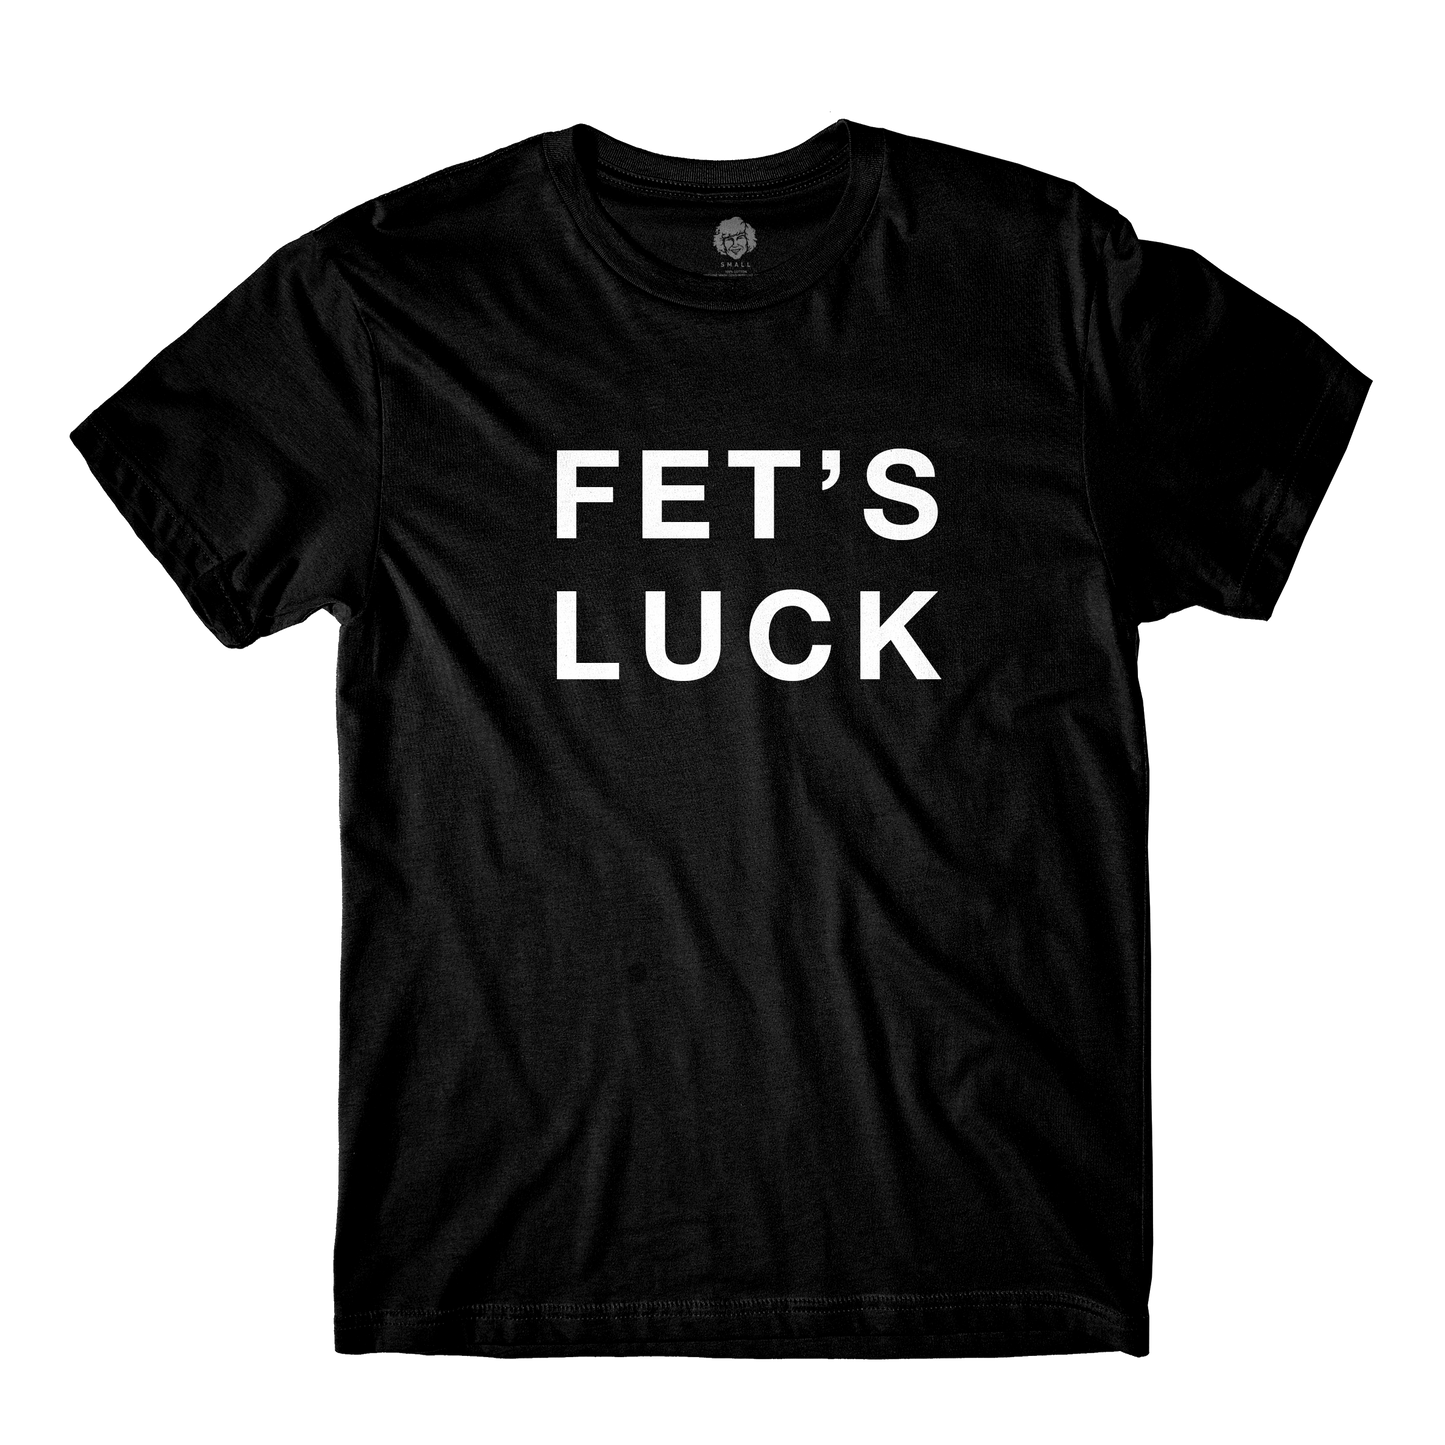 Fet's Luck Black Tee